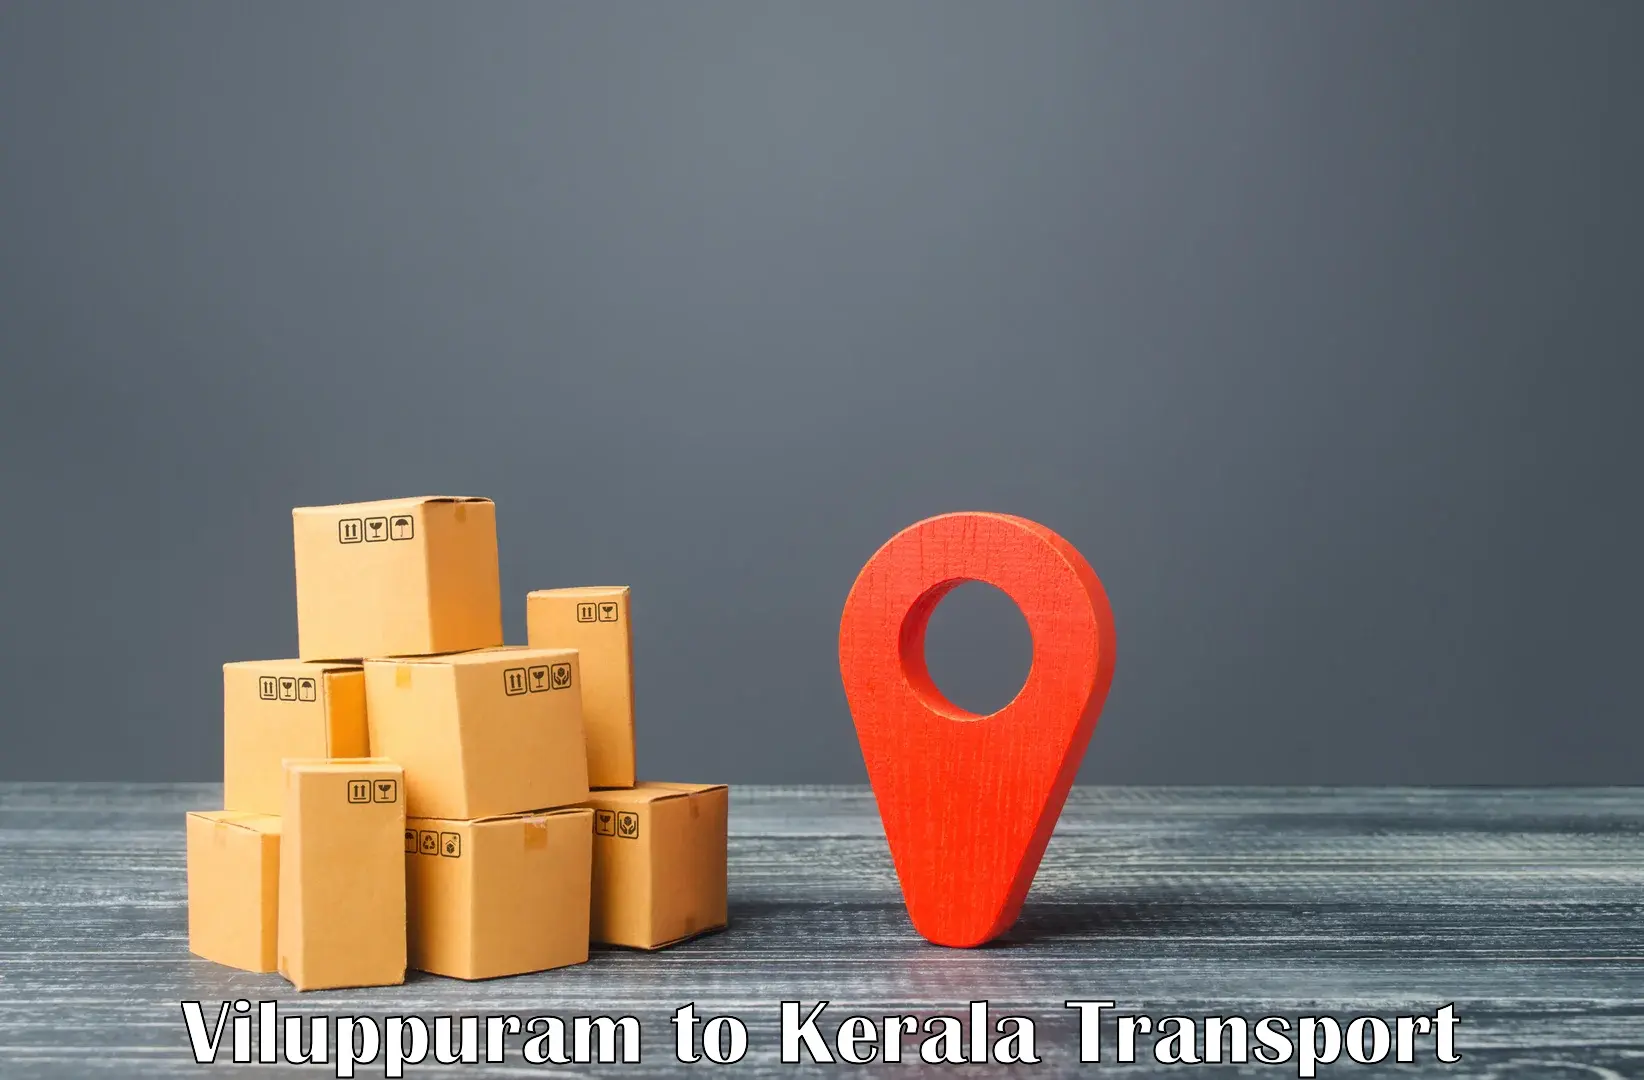 Road transport online services Viluppuram to Thrissur